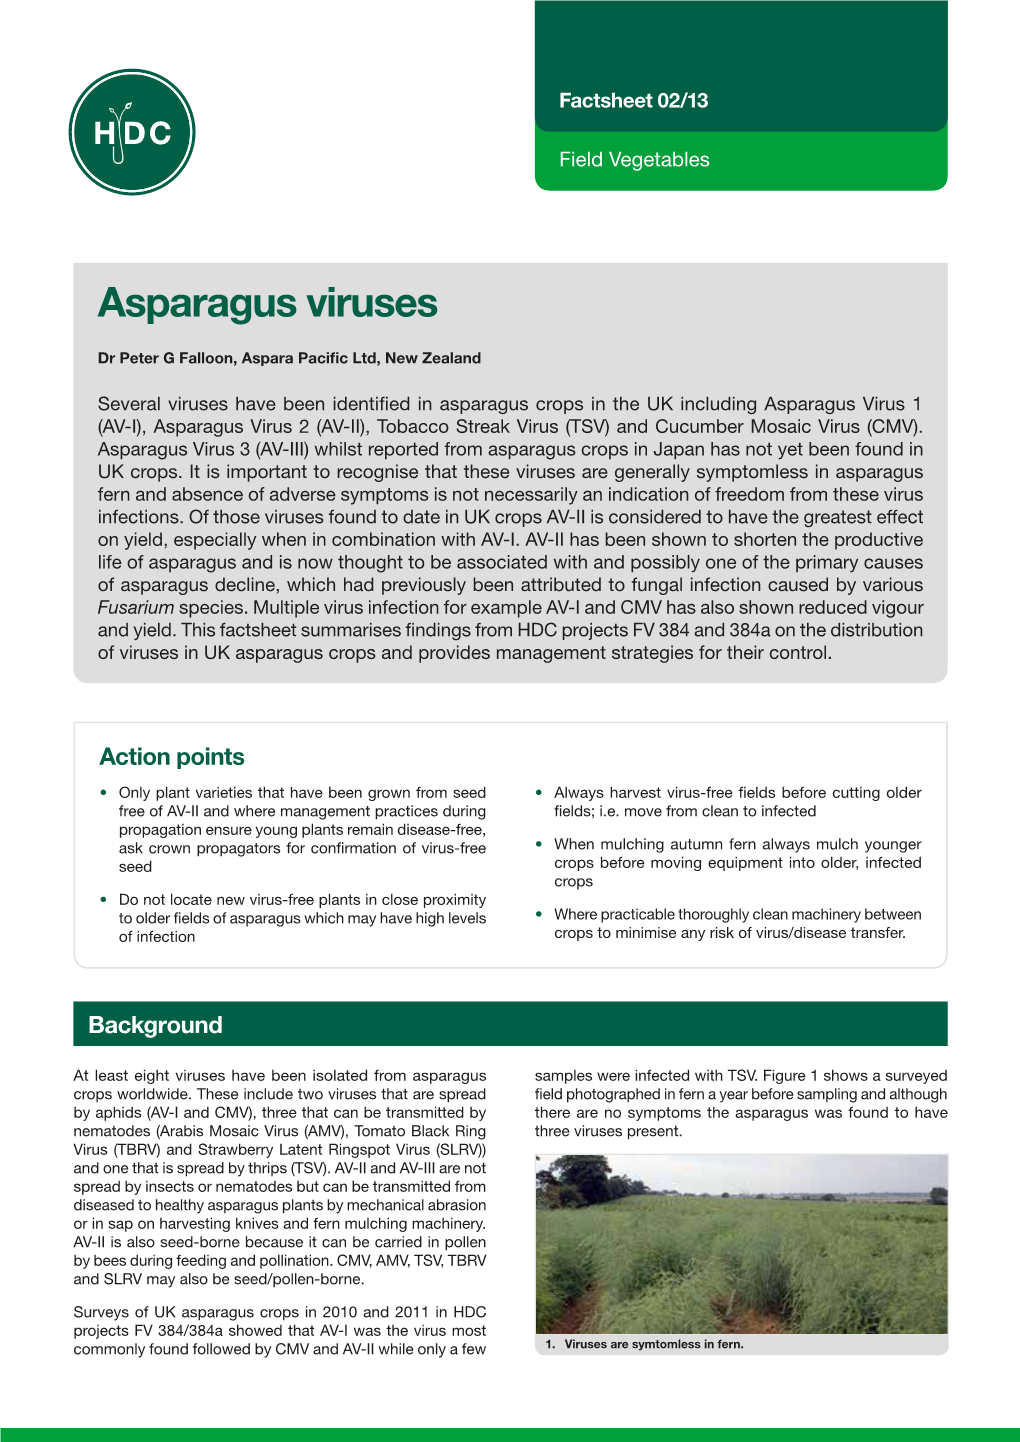 Asparagus Viruses